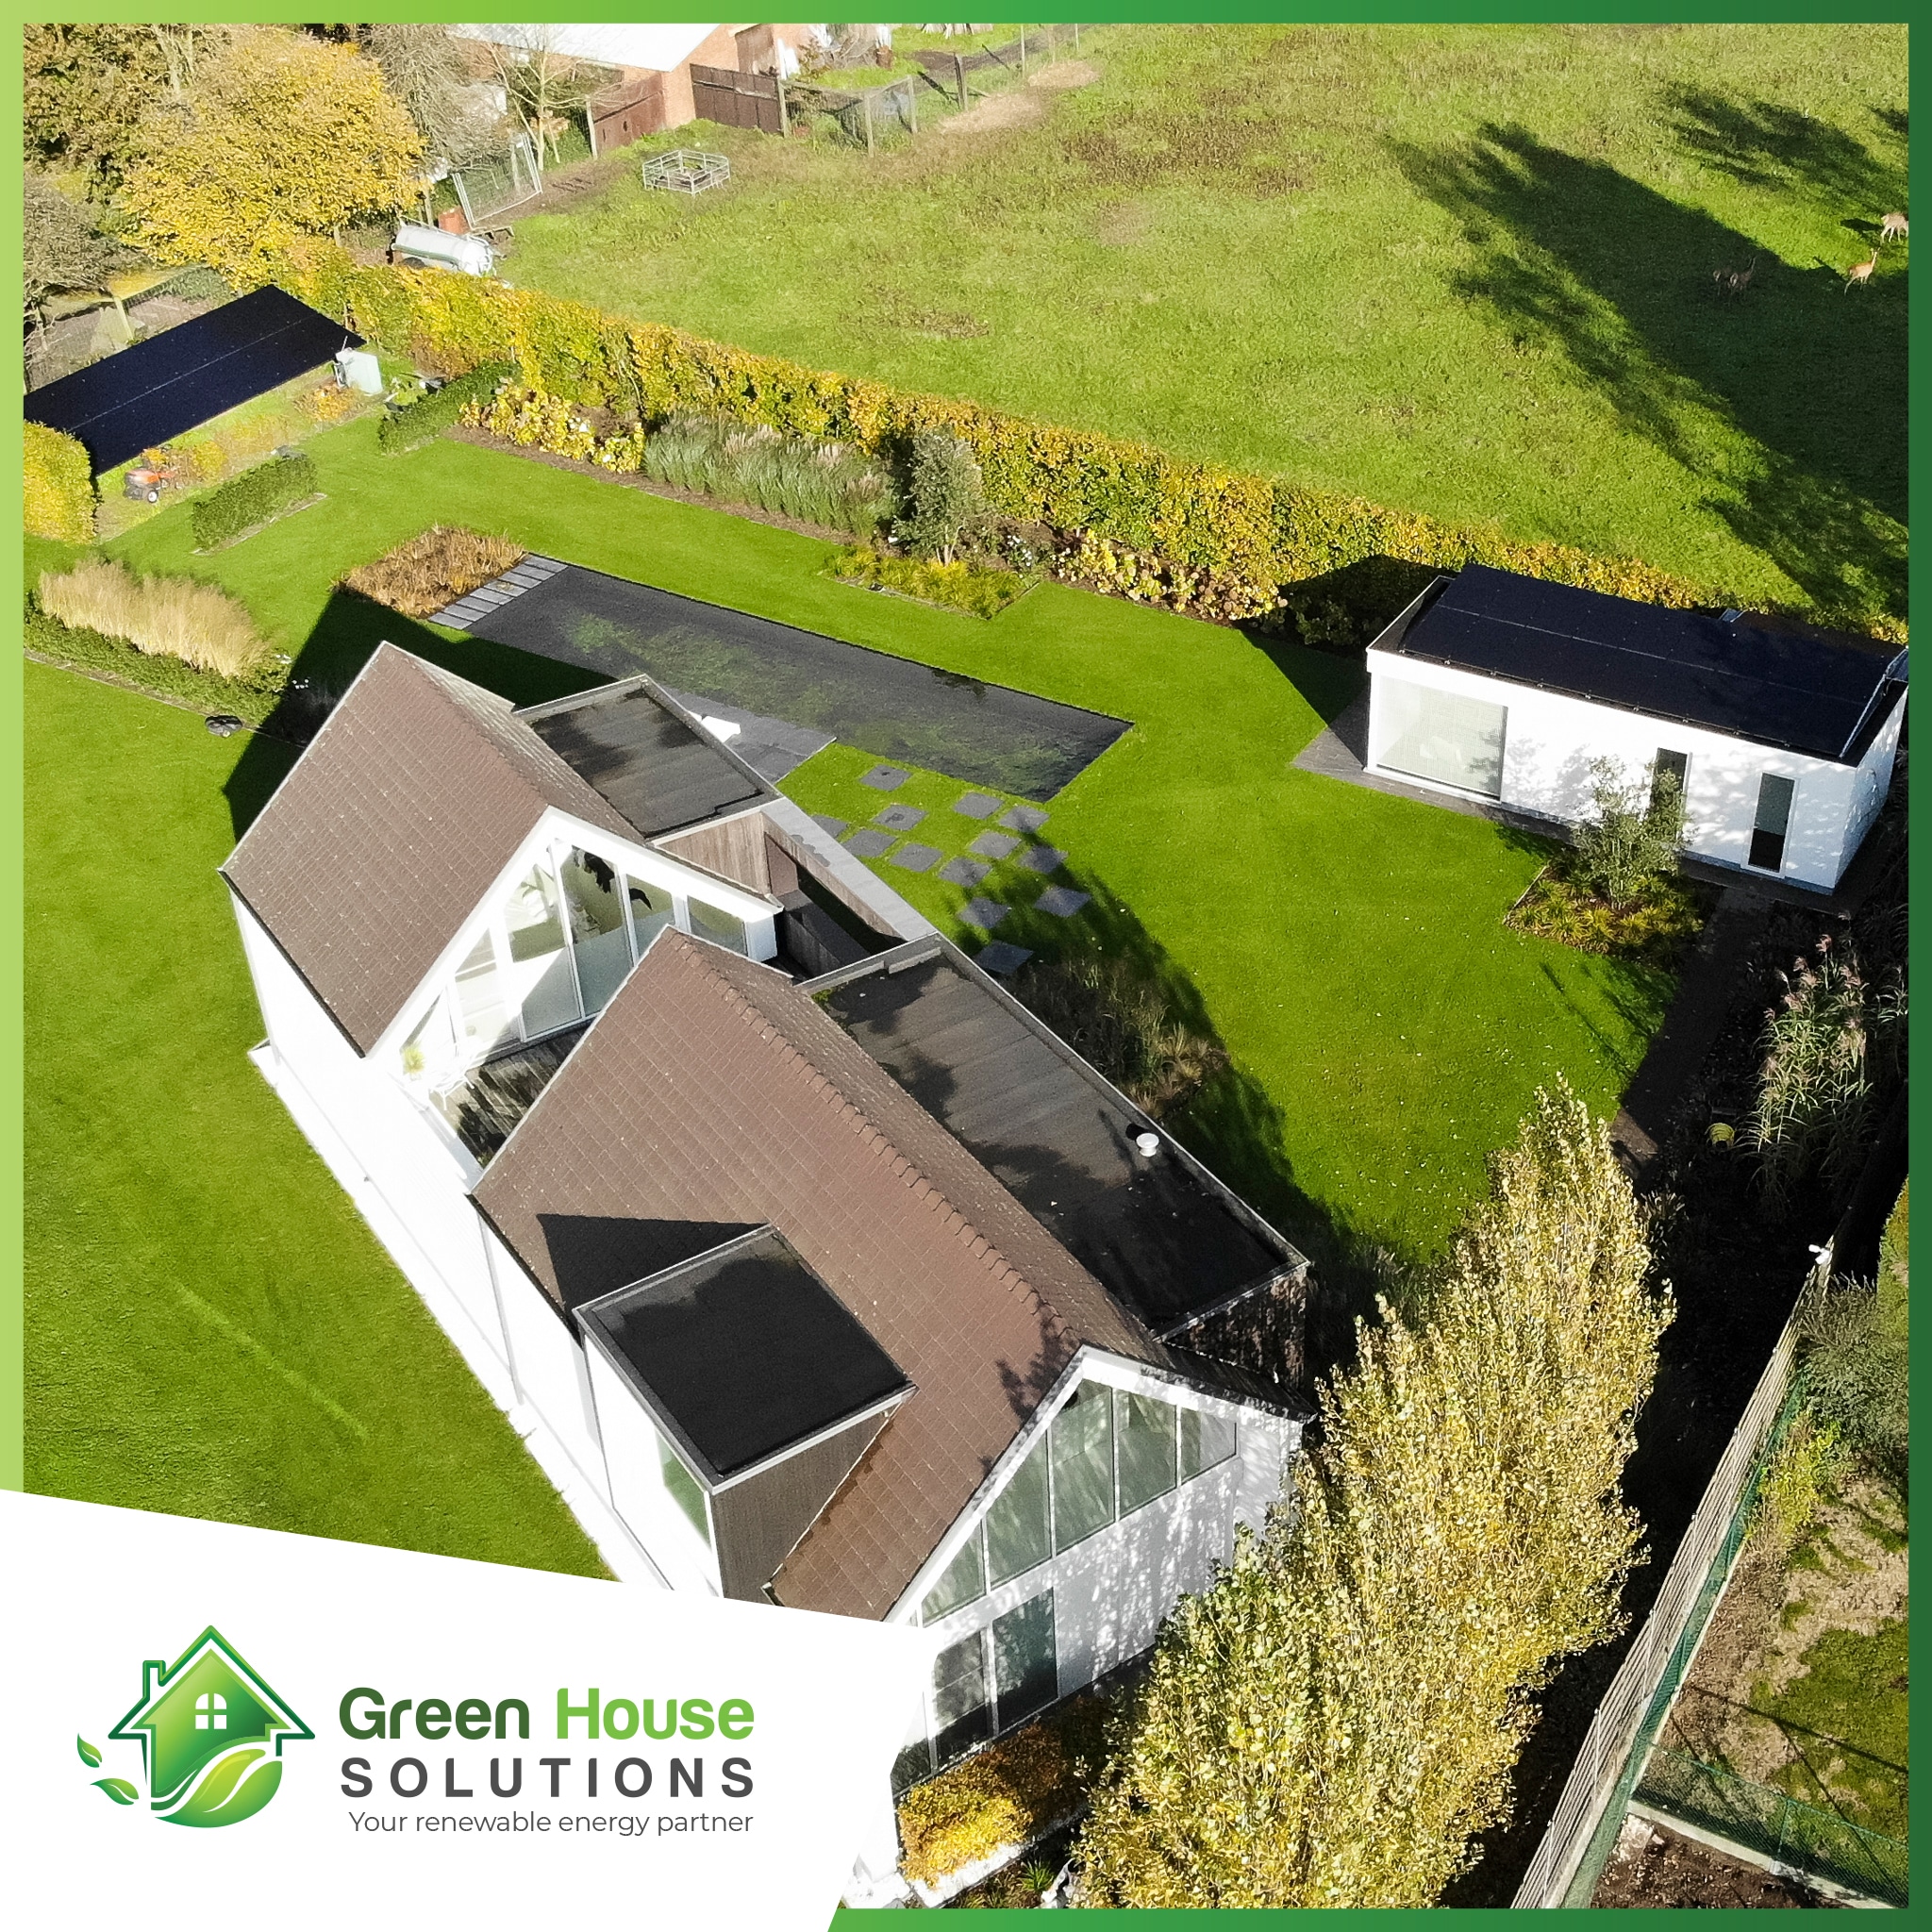 Green House Solutions zonnepanelen plaatsen installeren of kopen 00025